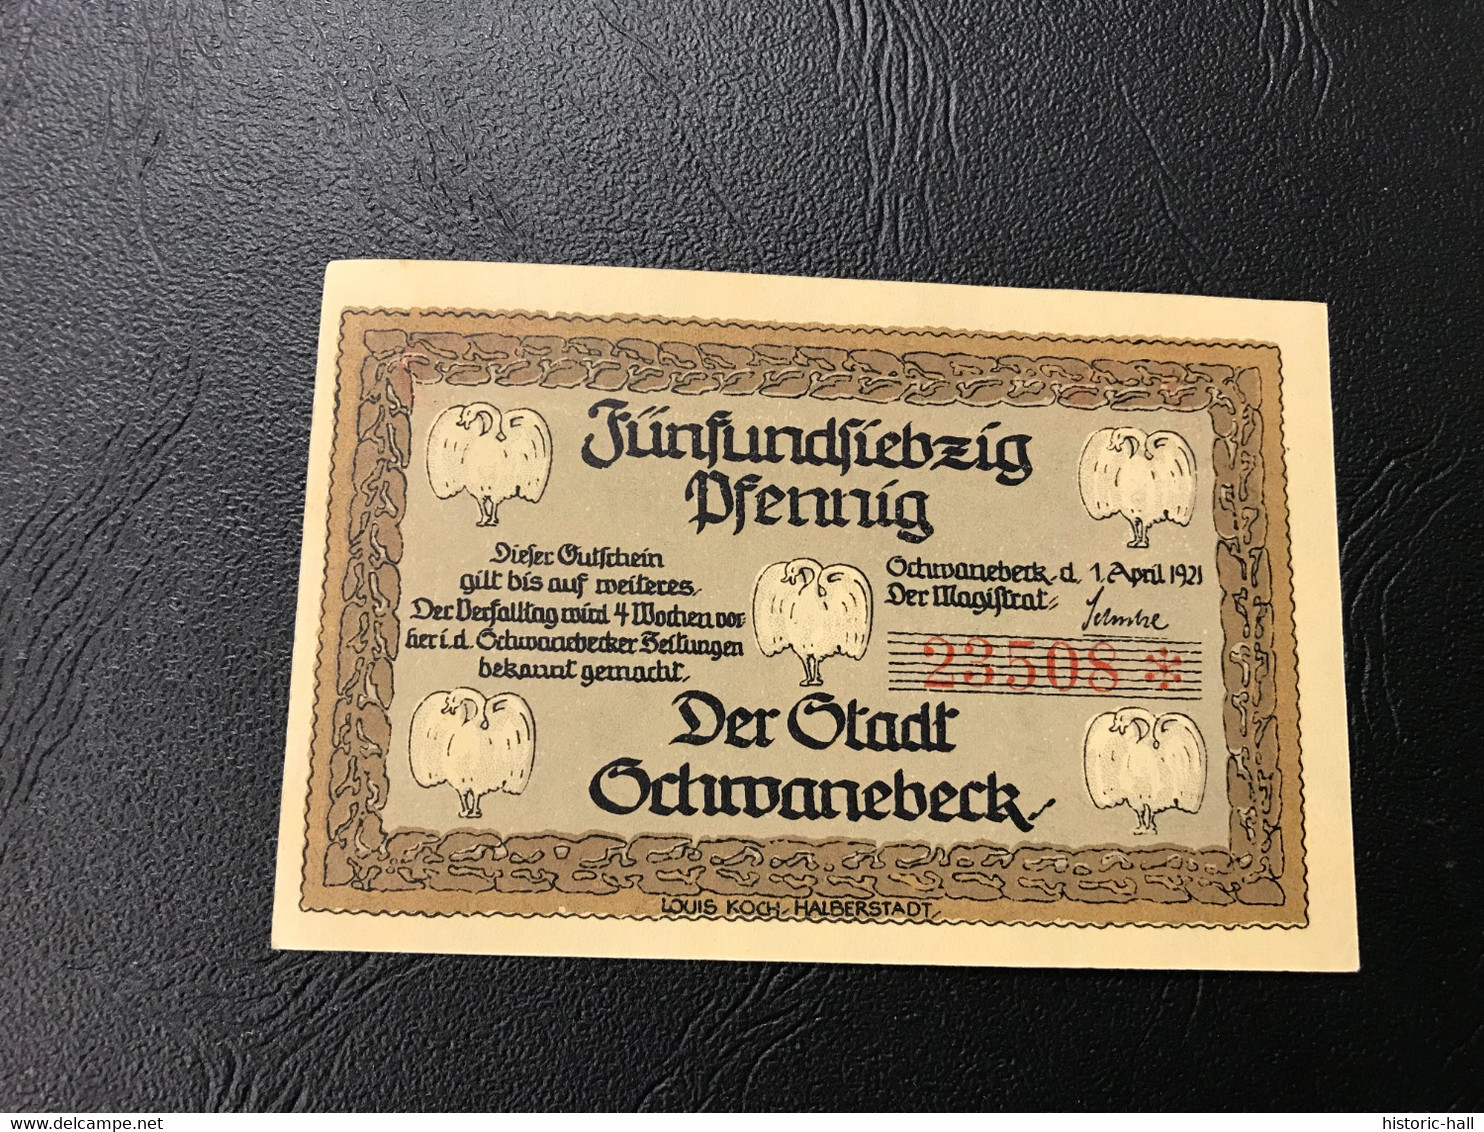 Notgeld - Billet Necéssité Allemagne - 75 Pfennig - Schwanebeck - 1 Avril 1921 - Zonder Classificatie